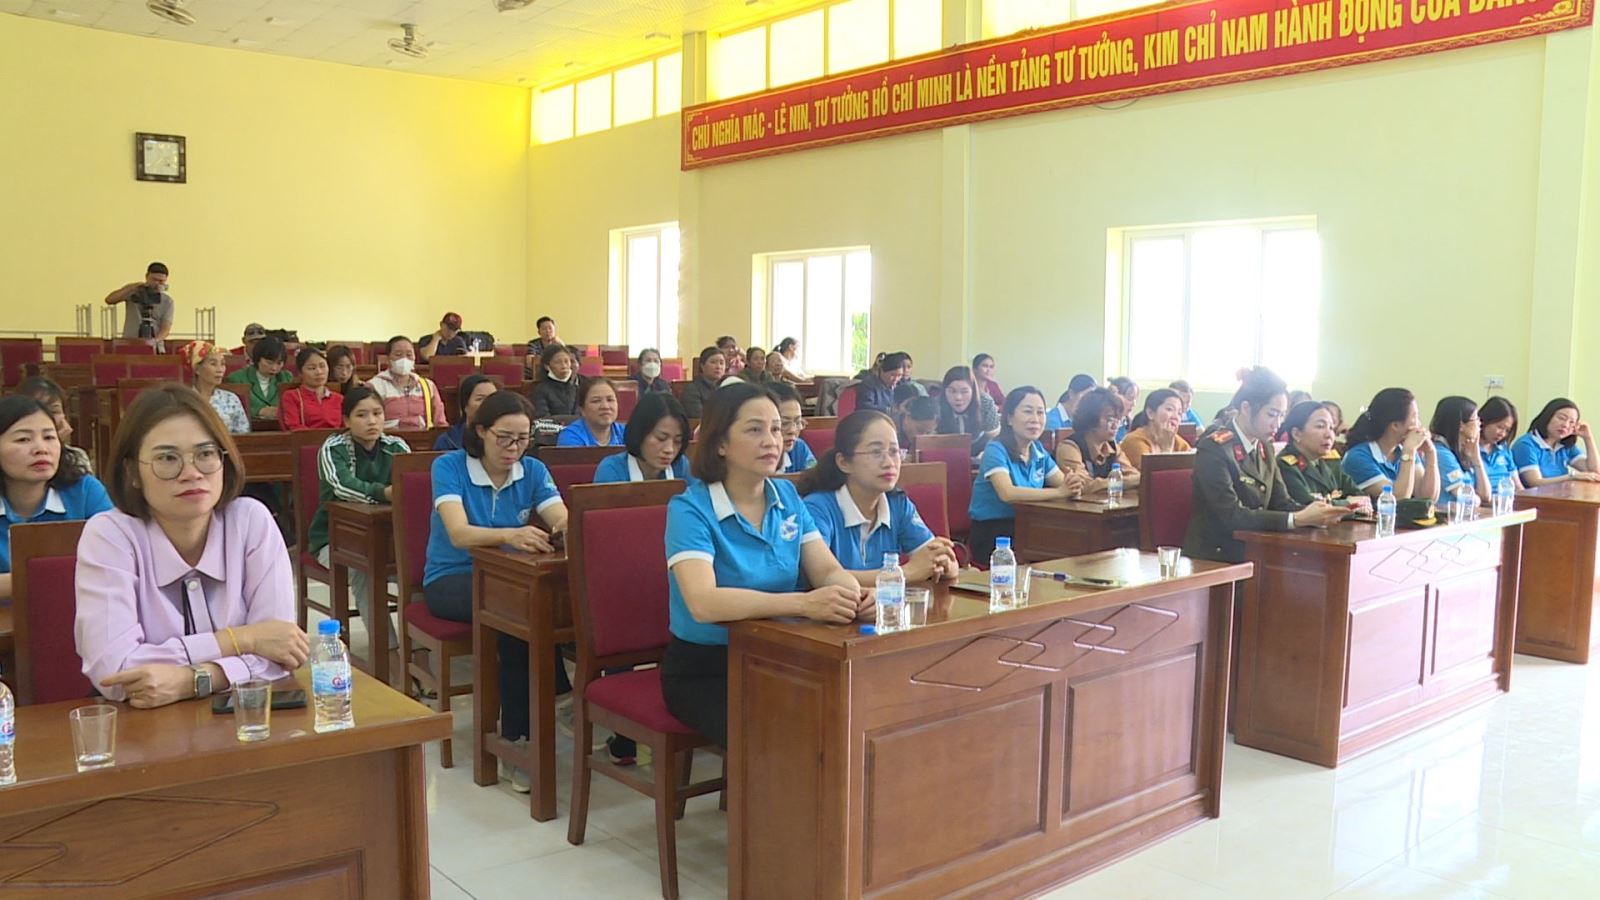 Hội LHPN tỉnh Bắc Ninh phối hợp với Hội LHPN tỉnh Sơn La tổ chức thăm, tặng quá, hỗ trợ mô hình sinh kế cho hội viên phụ nữ nghèo huyện Mộc châu